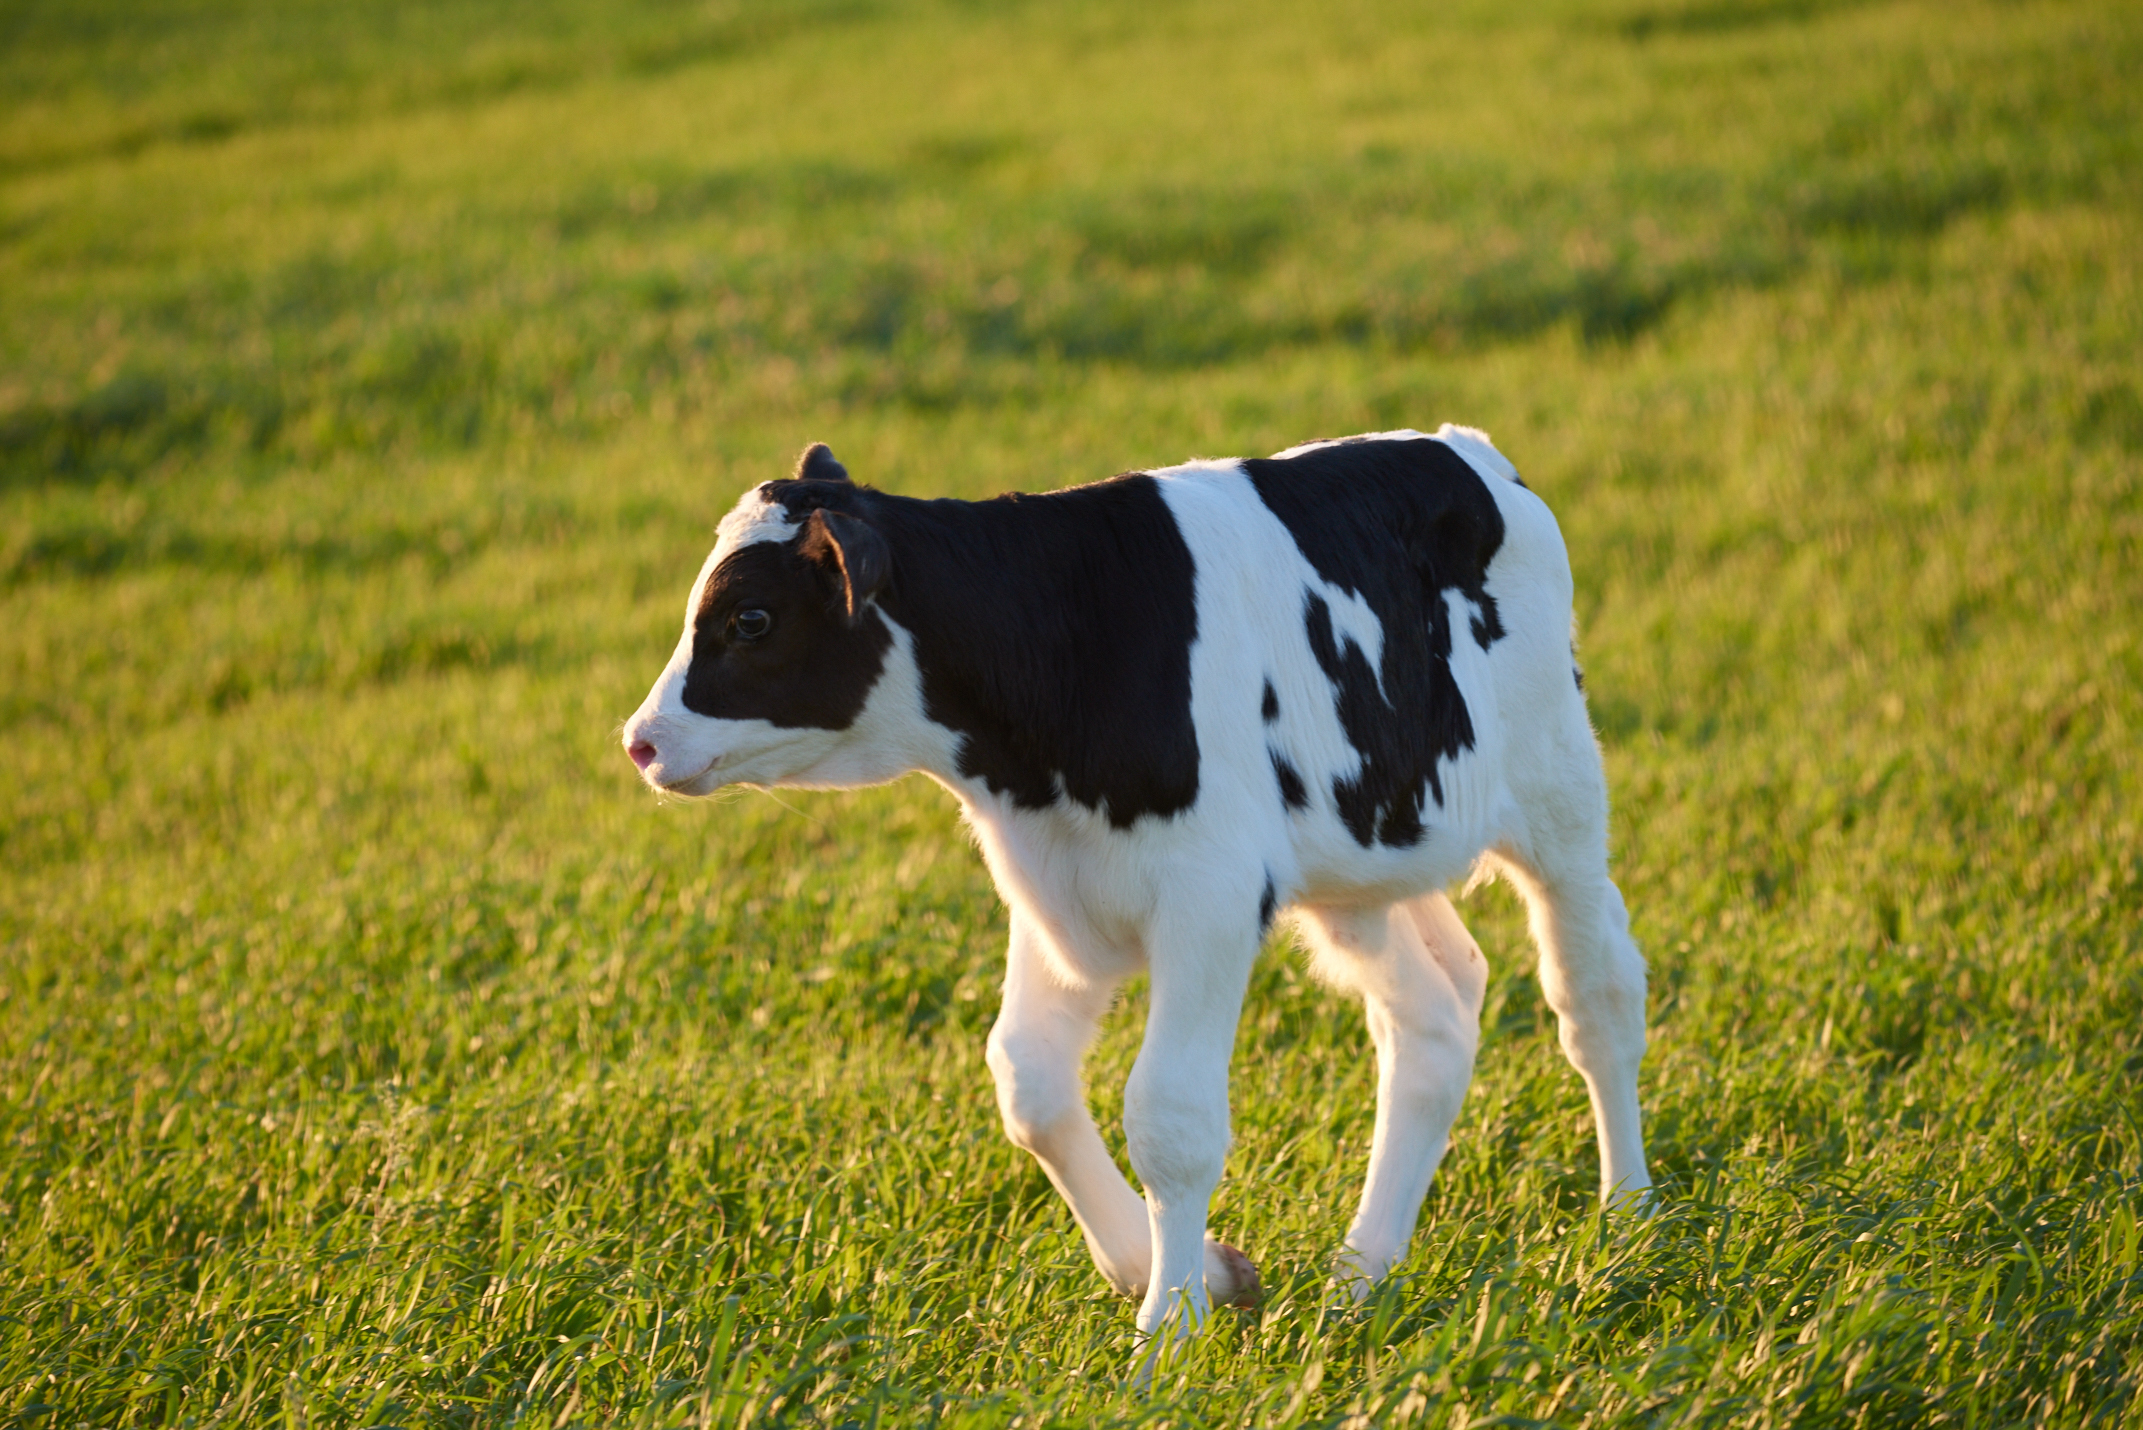 当前我国畜牧业正处于飞速发展阶段,目前已拥有近66万个奶牛牧场